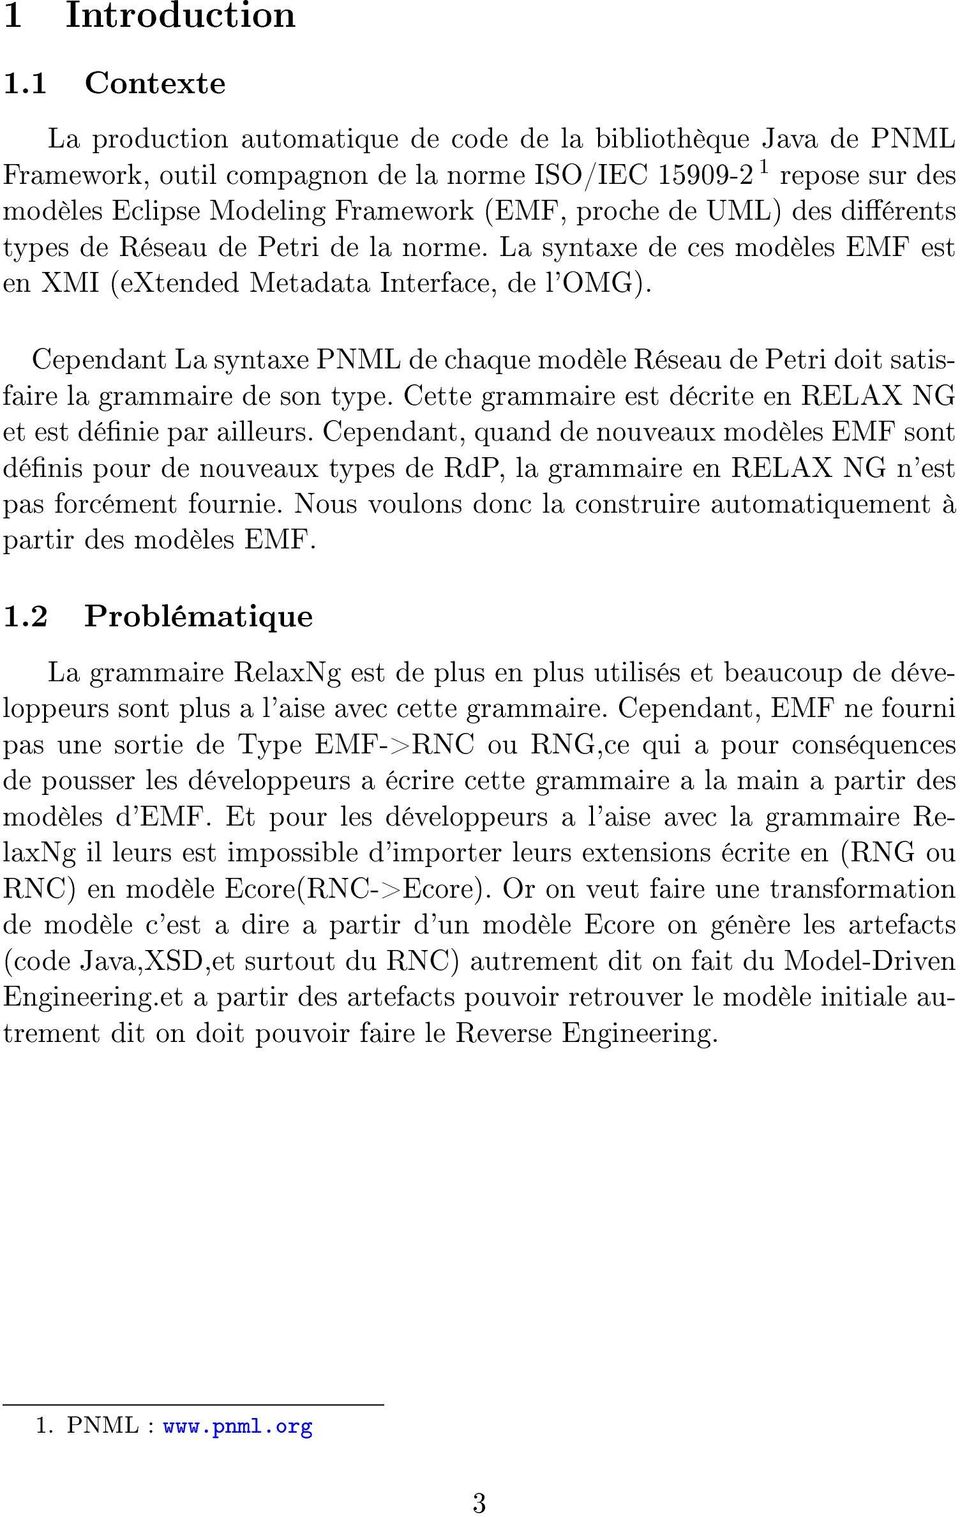 UML) des diérents types de Réseau de Petri de la norme. La syntaxe de ces modèles EMF est en XMI (extended Metadata Interface, de l'omg).